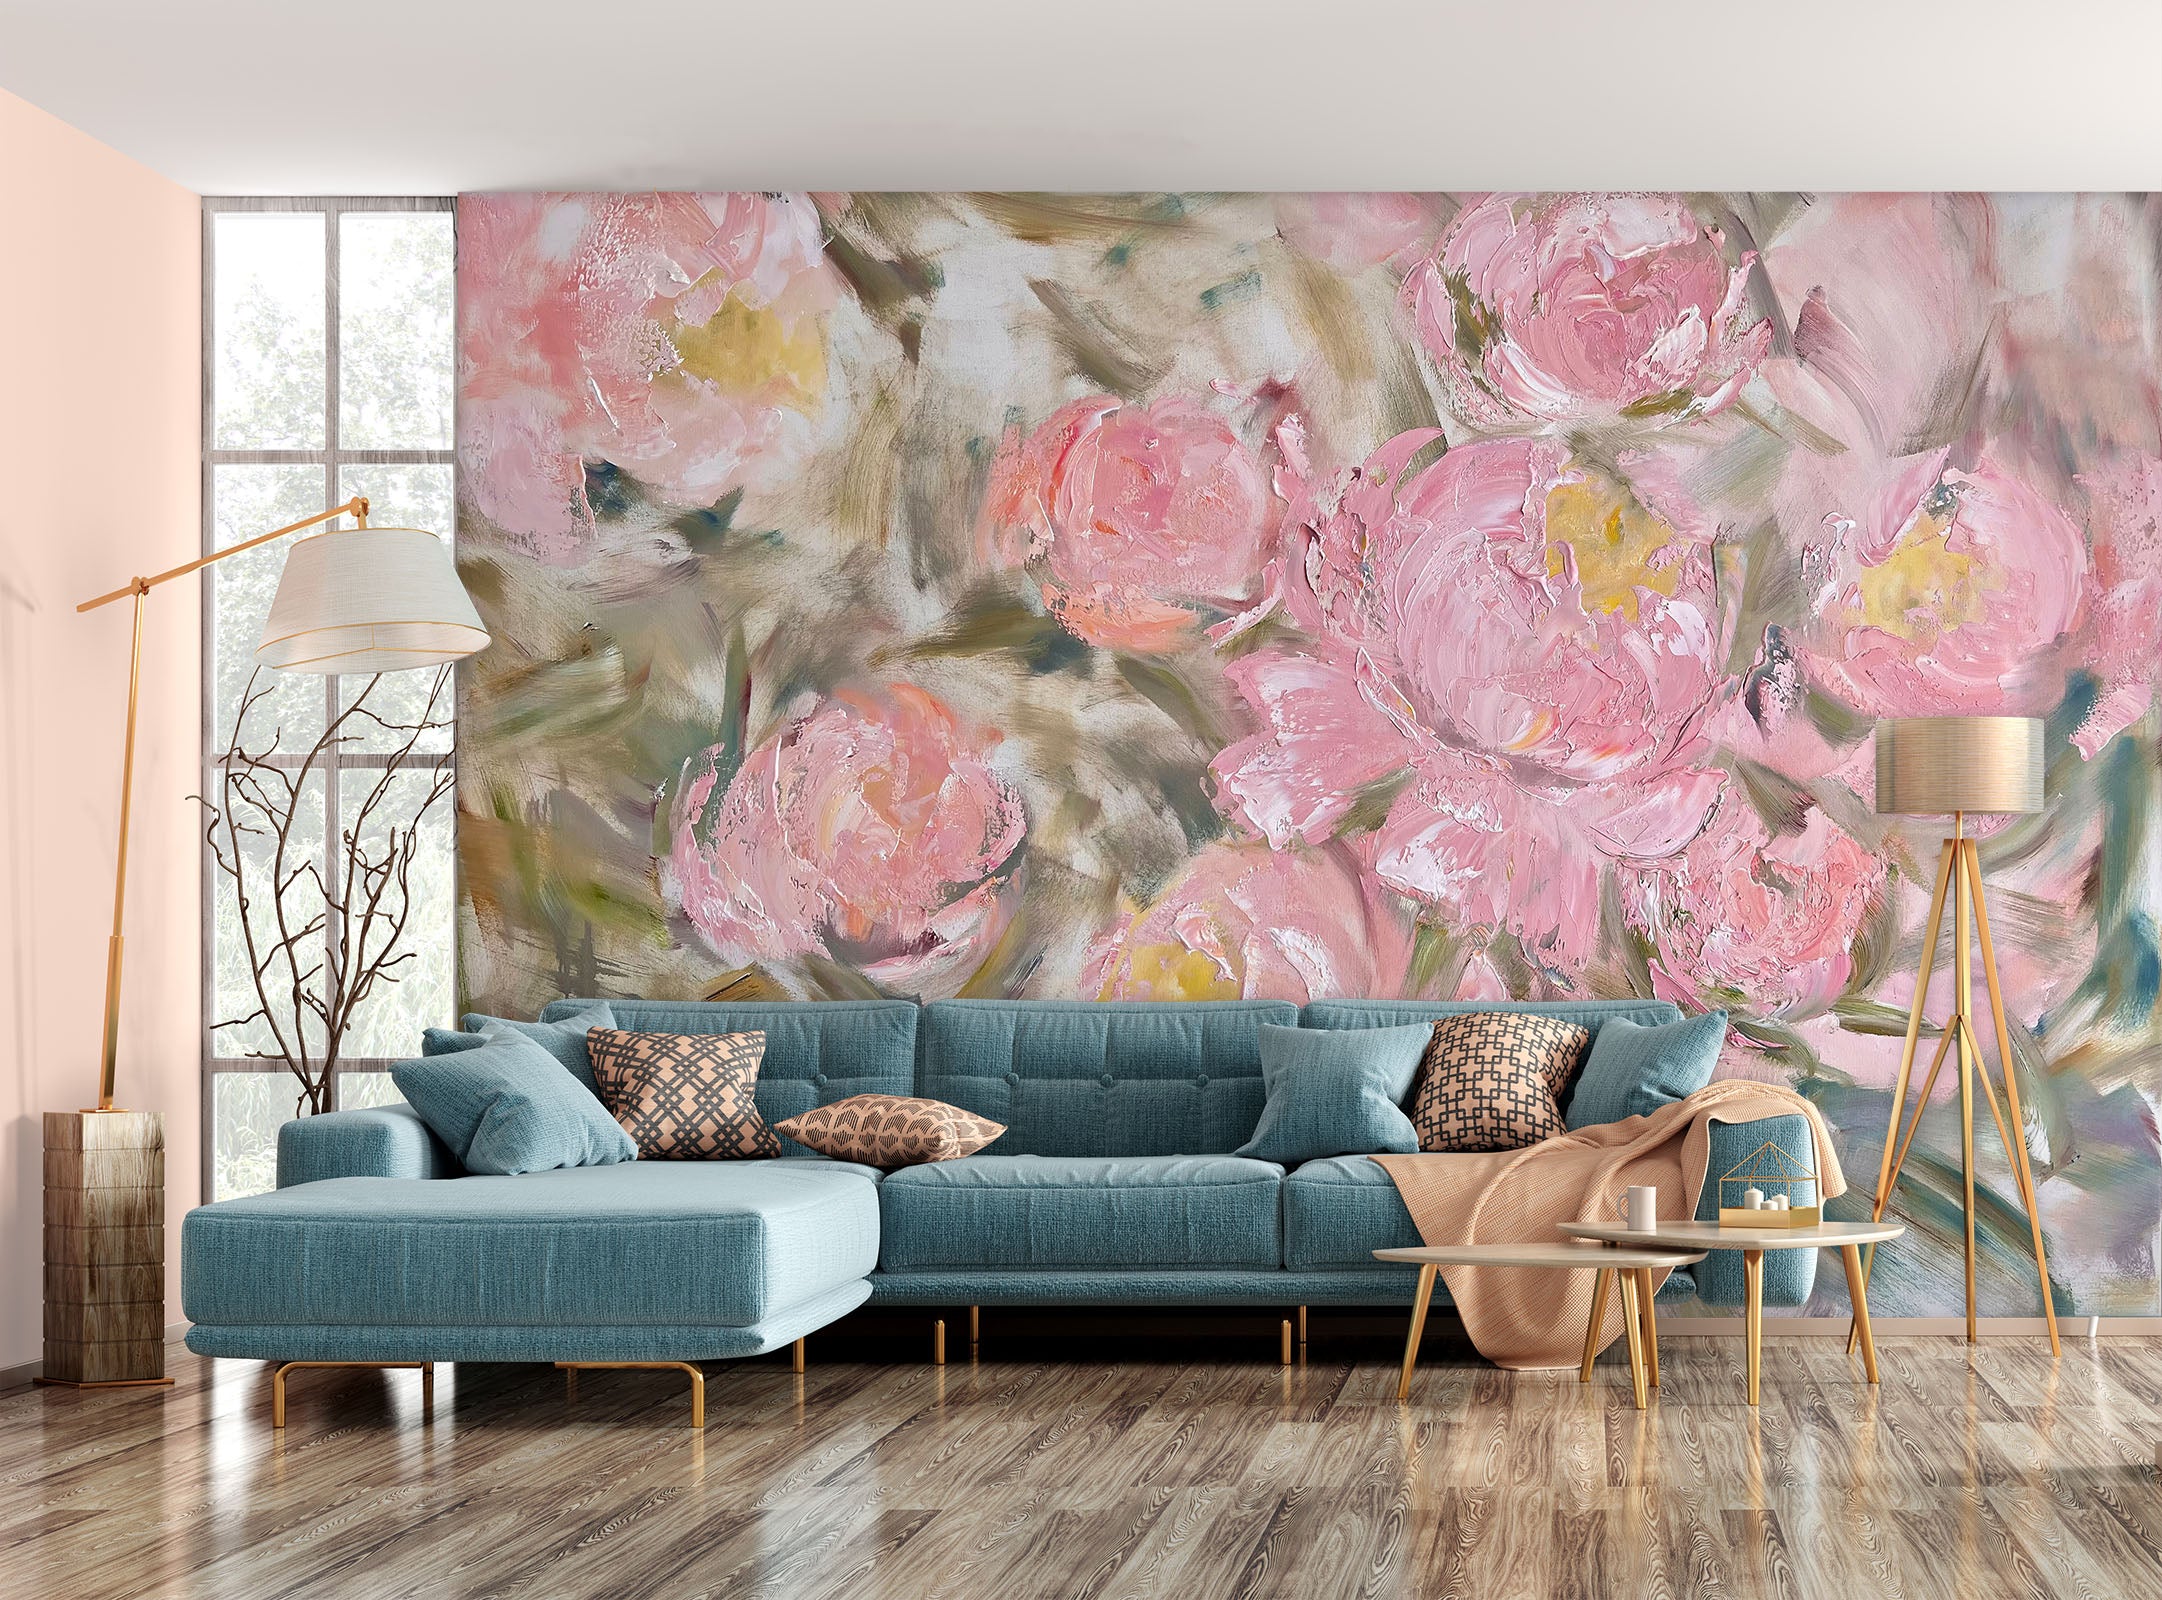 3D Painted Pink Flowers 3102 Skromova Marina Wall Mural Wall Murals